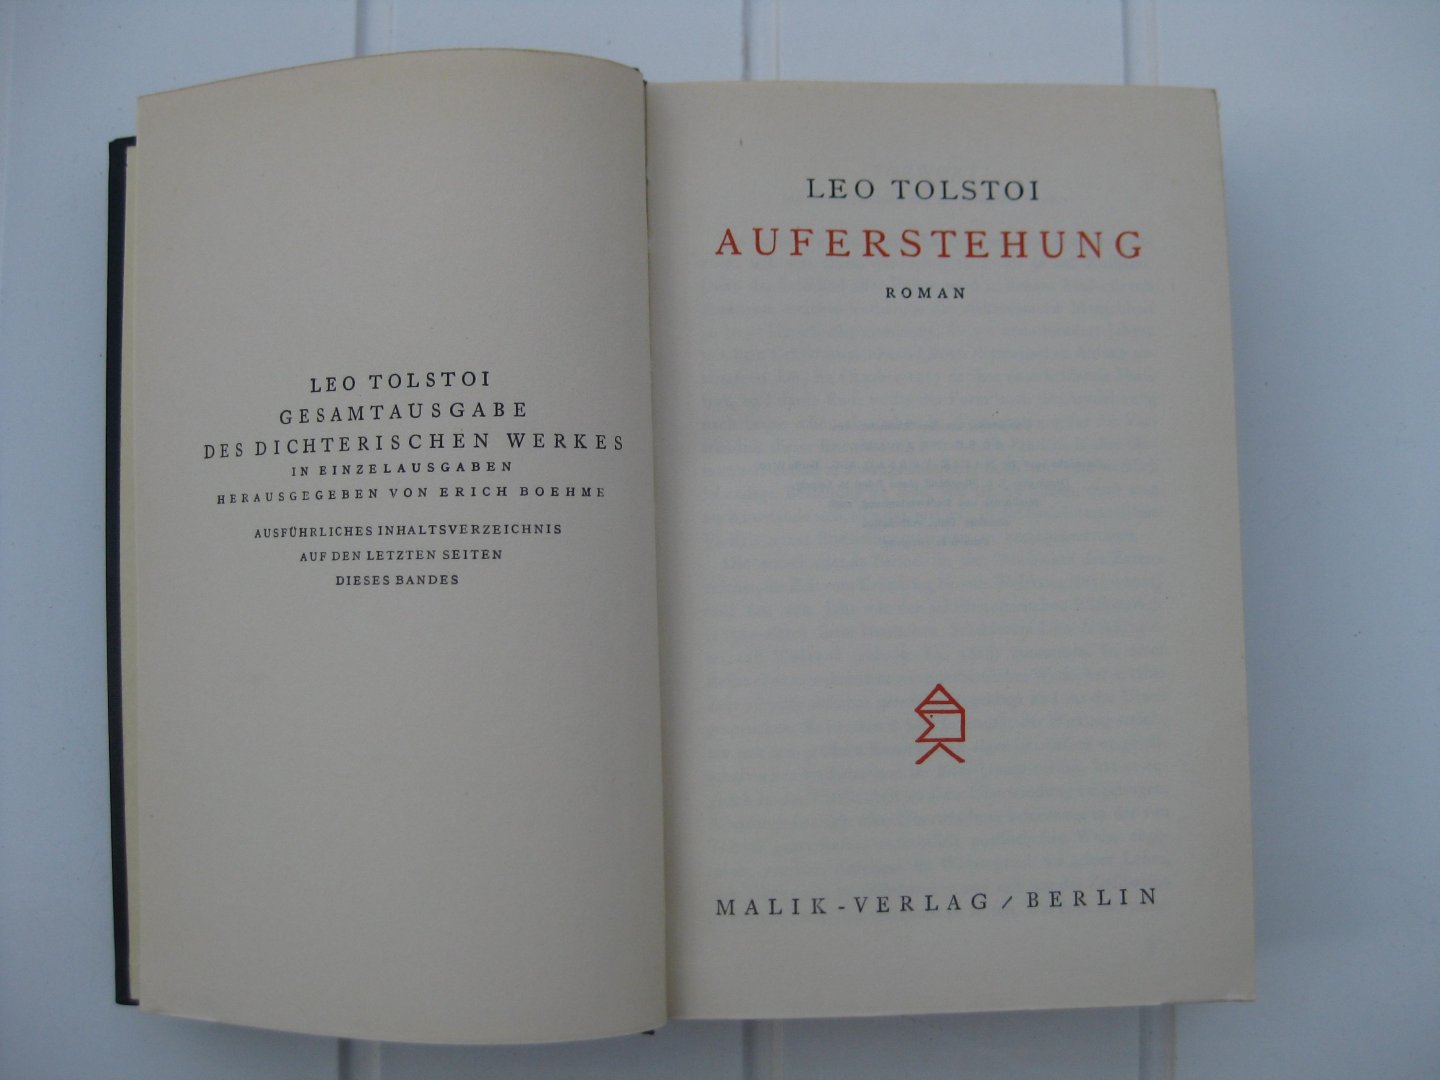 Tolstoi, Leo - Gesamtausgabe des dichterischen Werkes. In 14 boekdelen.